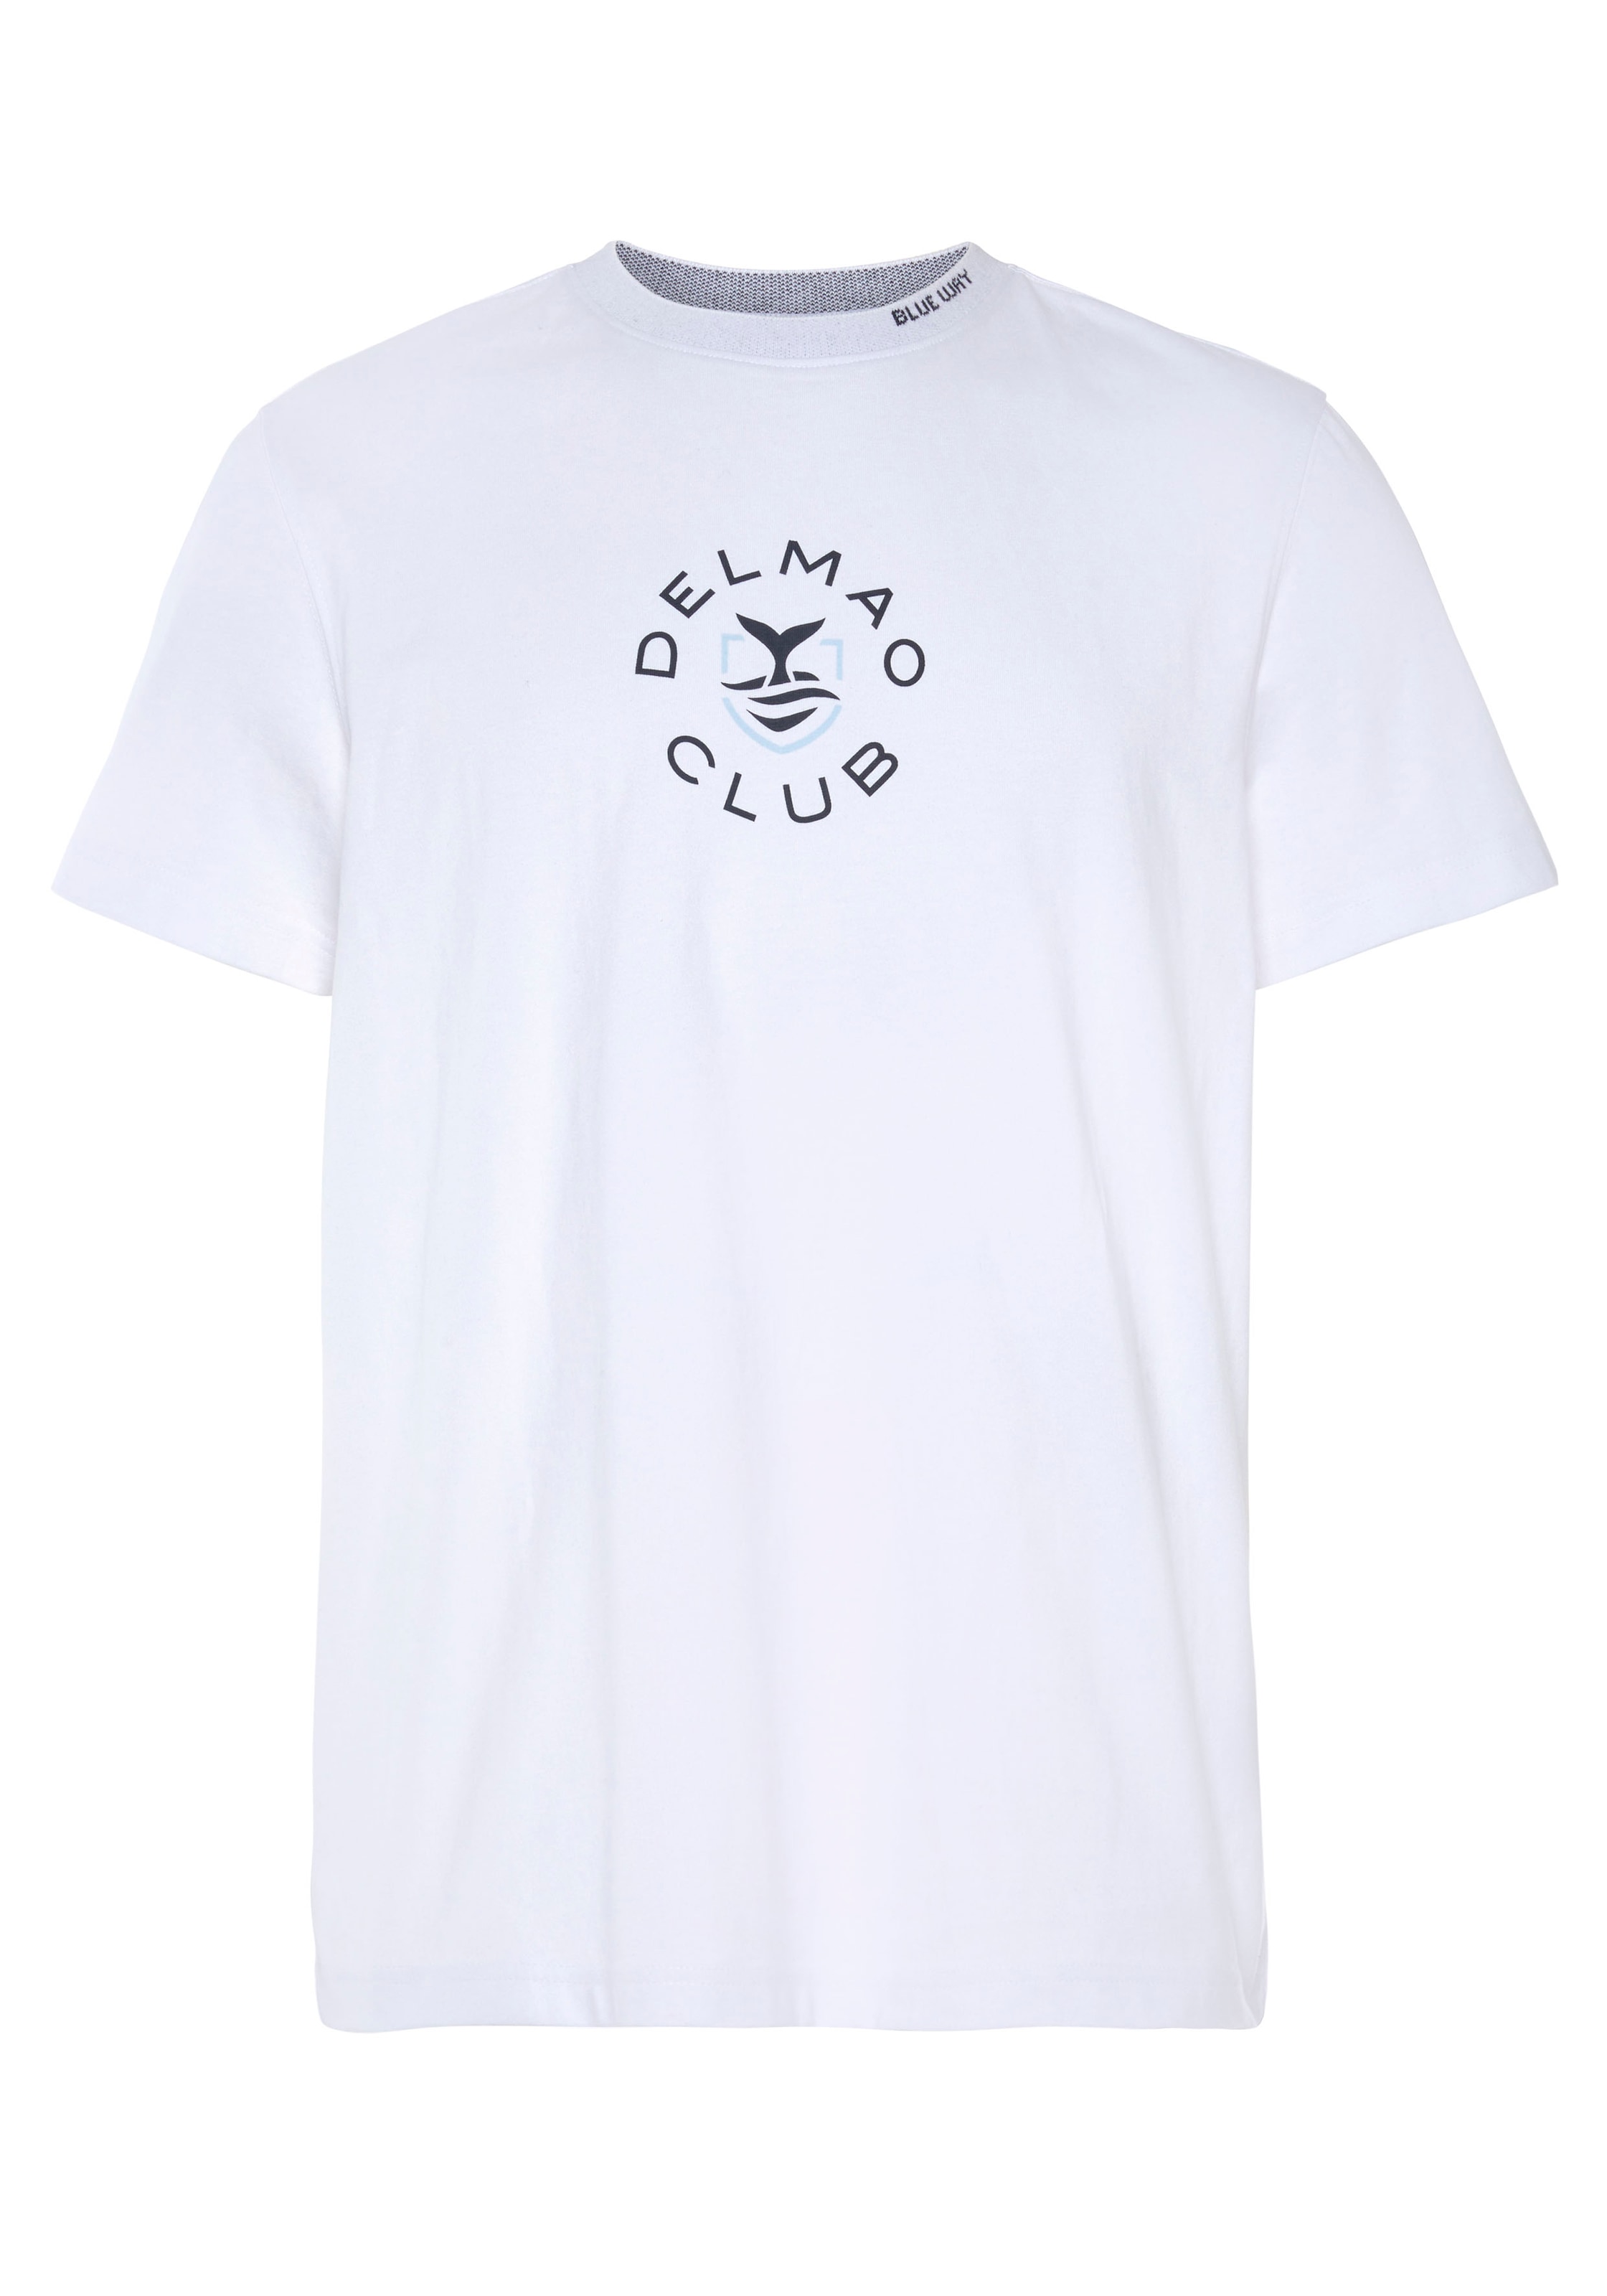 DELMAO T-Shirt, mit Brustprint und Halsausschnitt-NEUE MARKE! ♕ am Schriftzug bei